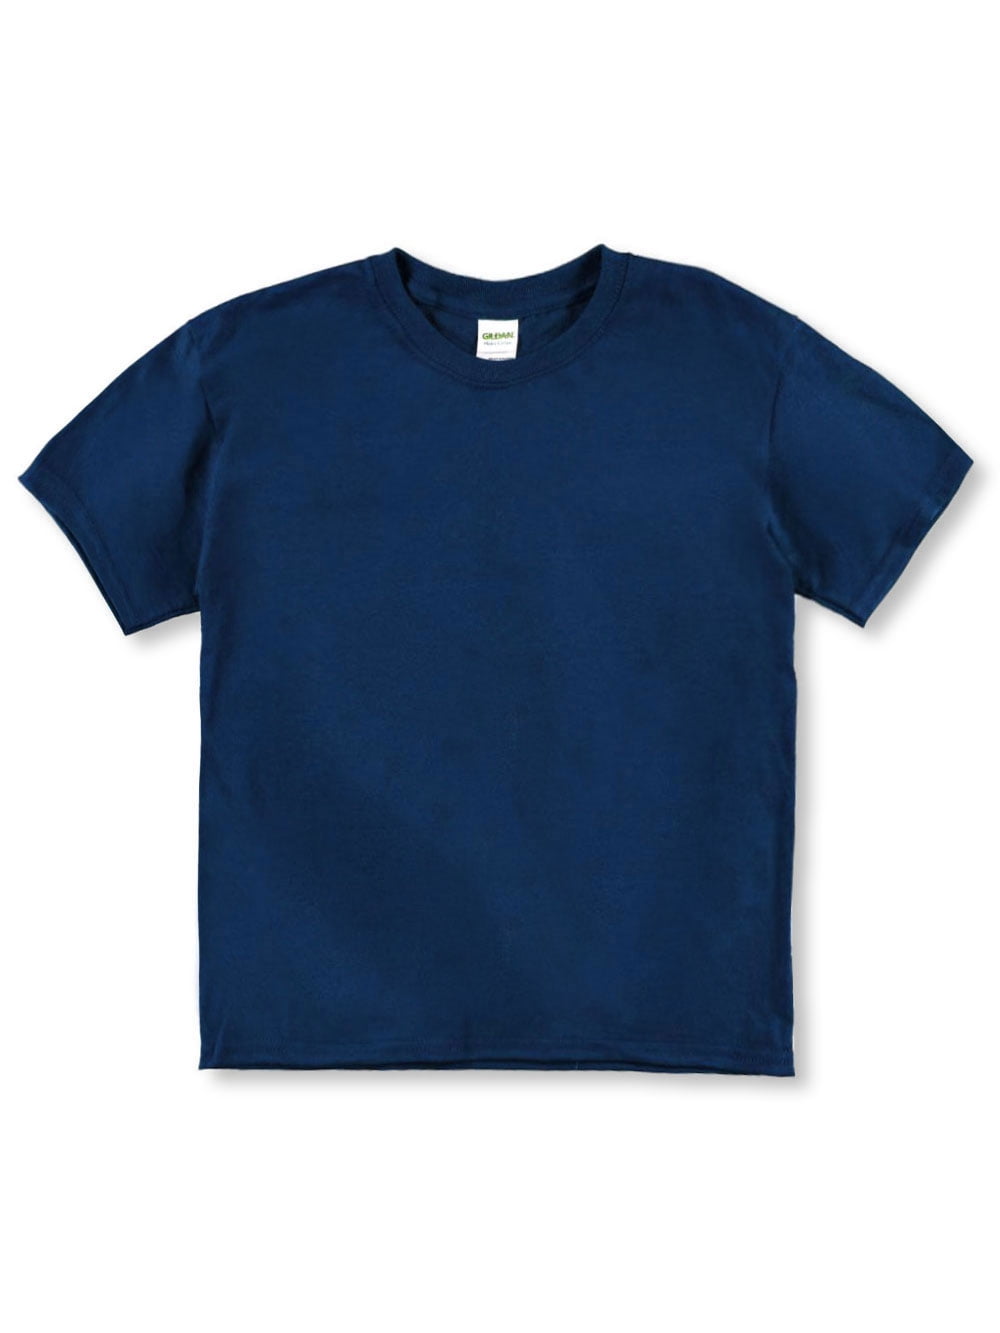 Gildan Unisex Youth T-Shirt - navy, xs/4-5 (Little Girls